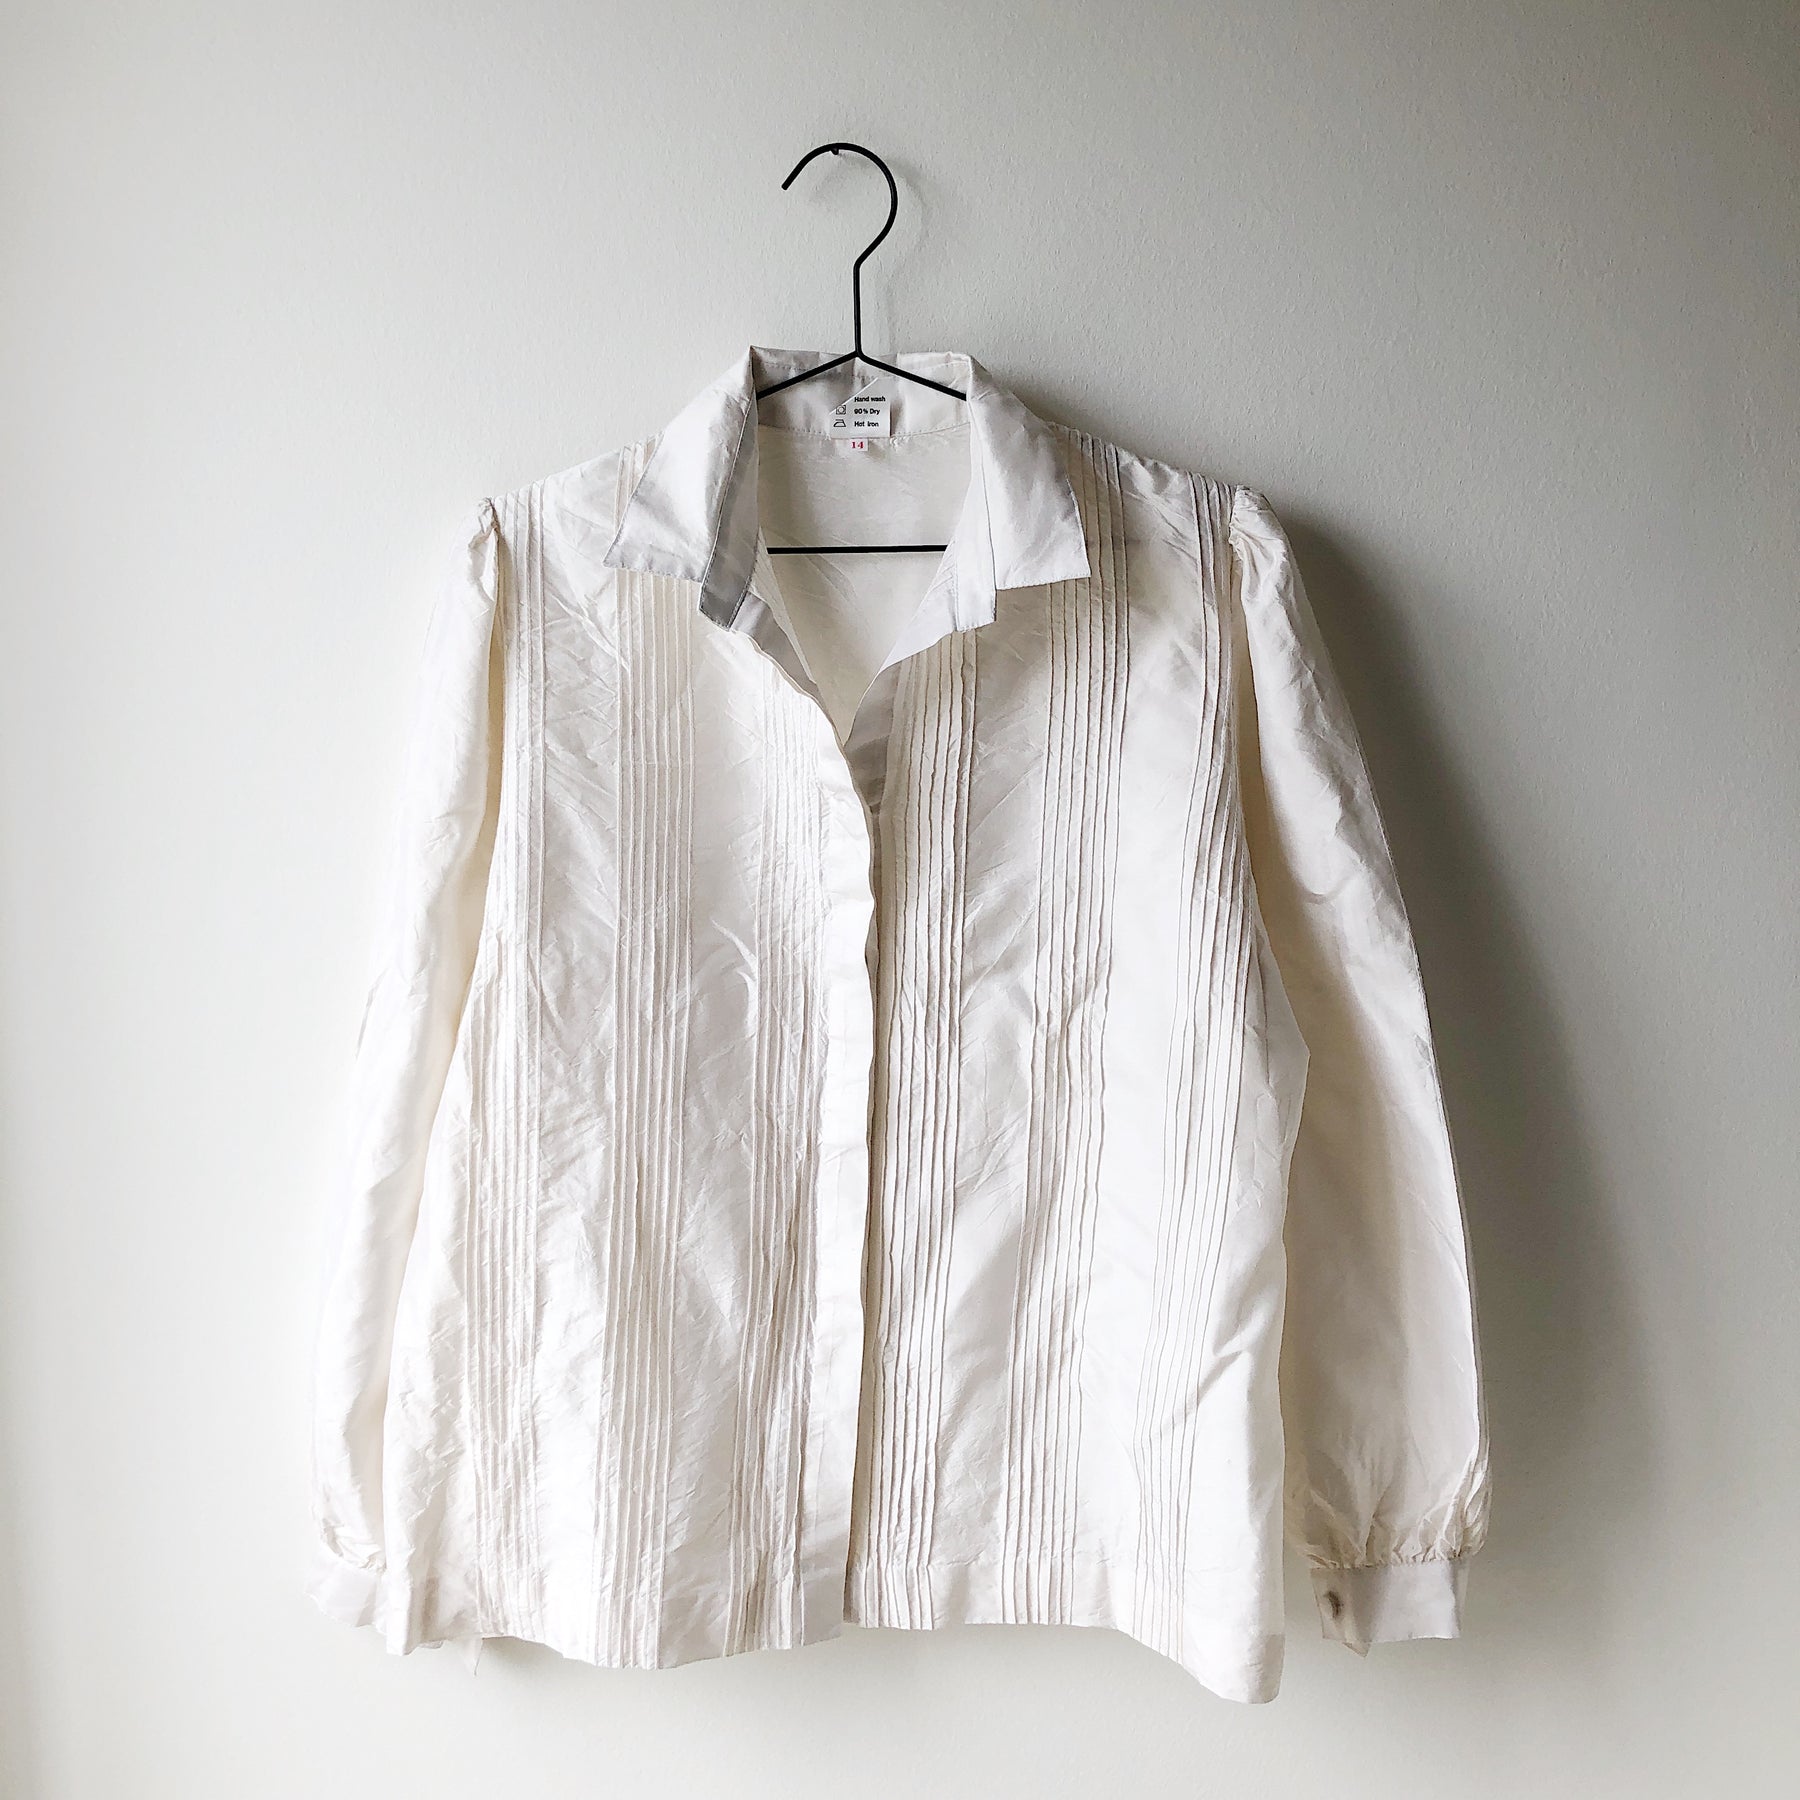 Hvid silke skjorte